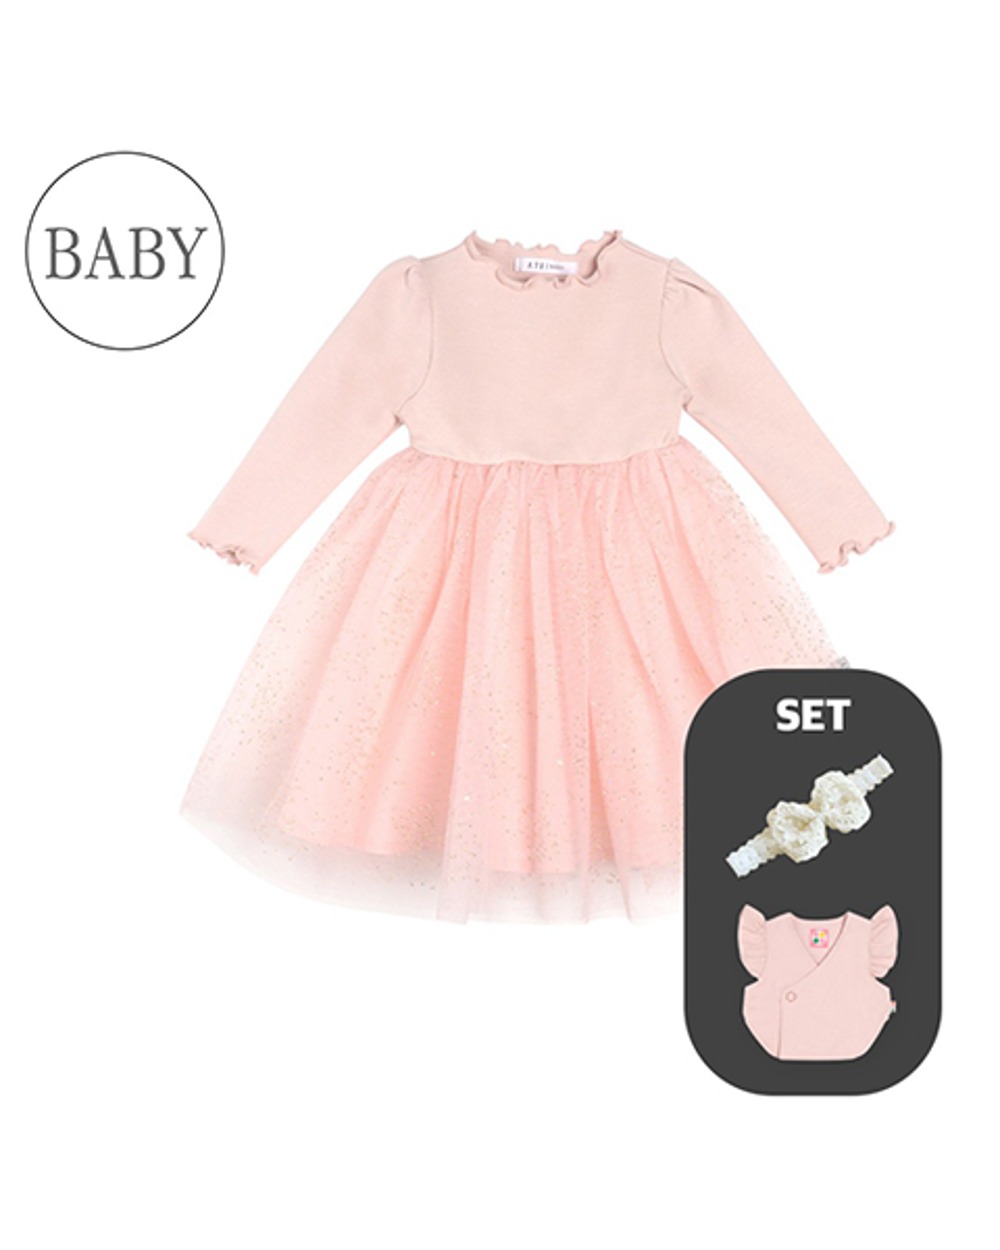 [설빔세트] 베이비 올리비아 튤 드레스+배자 세트_핑크